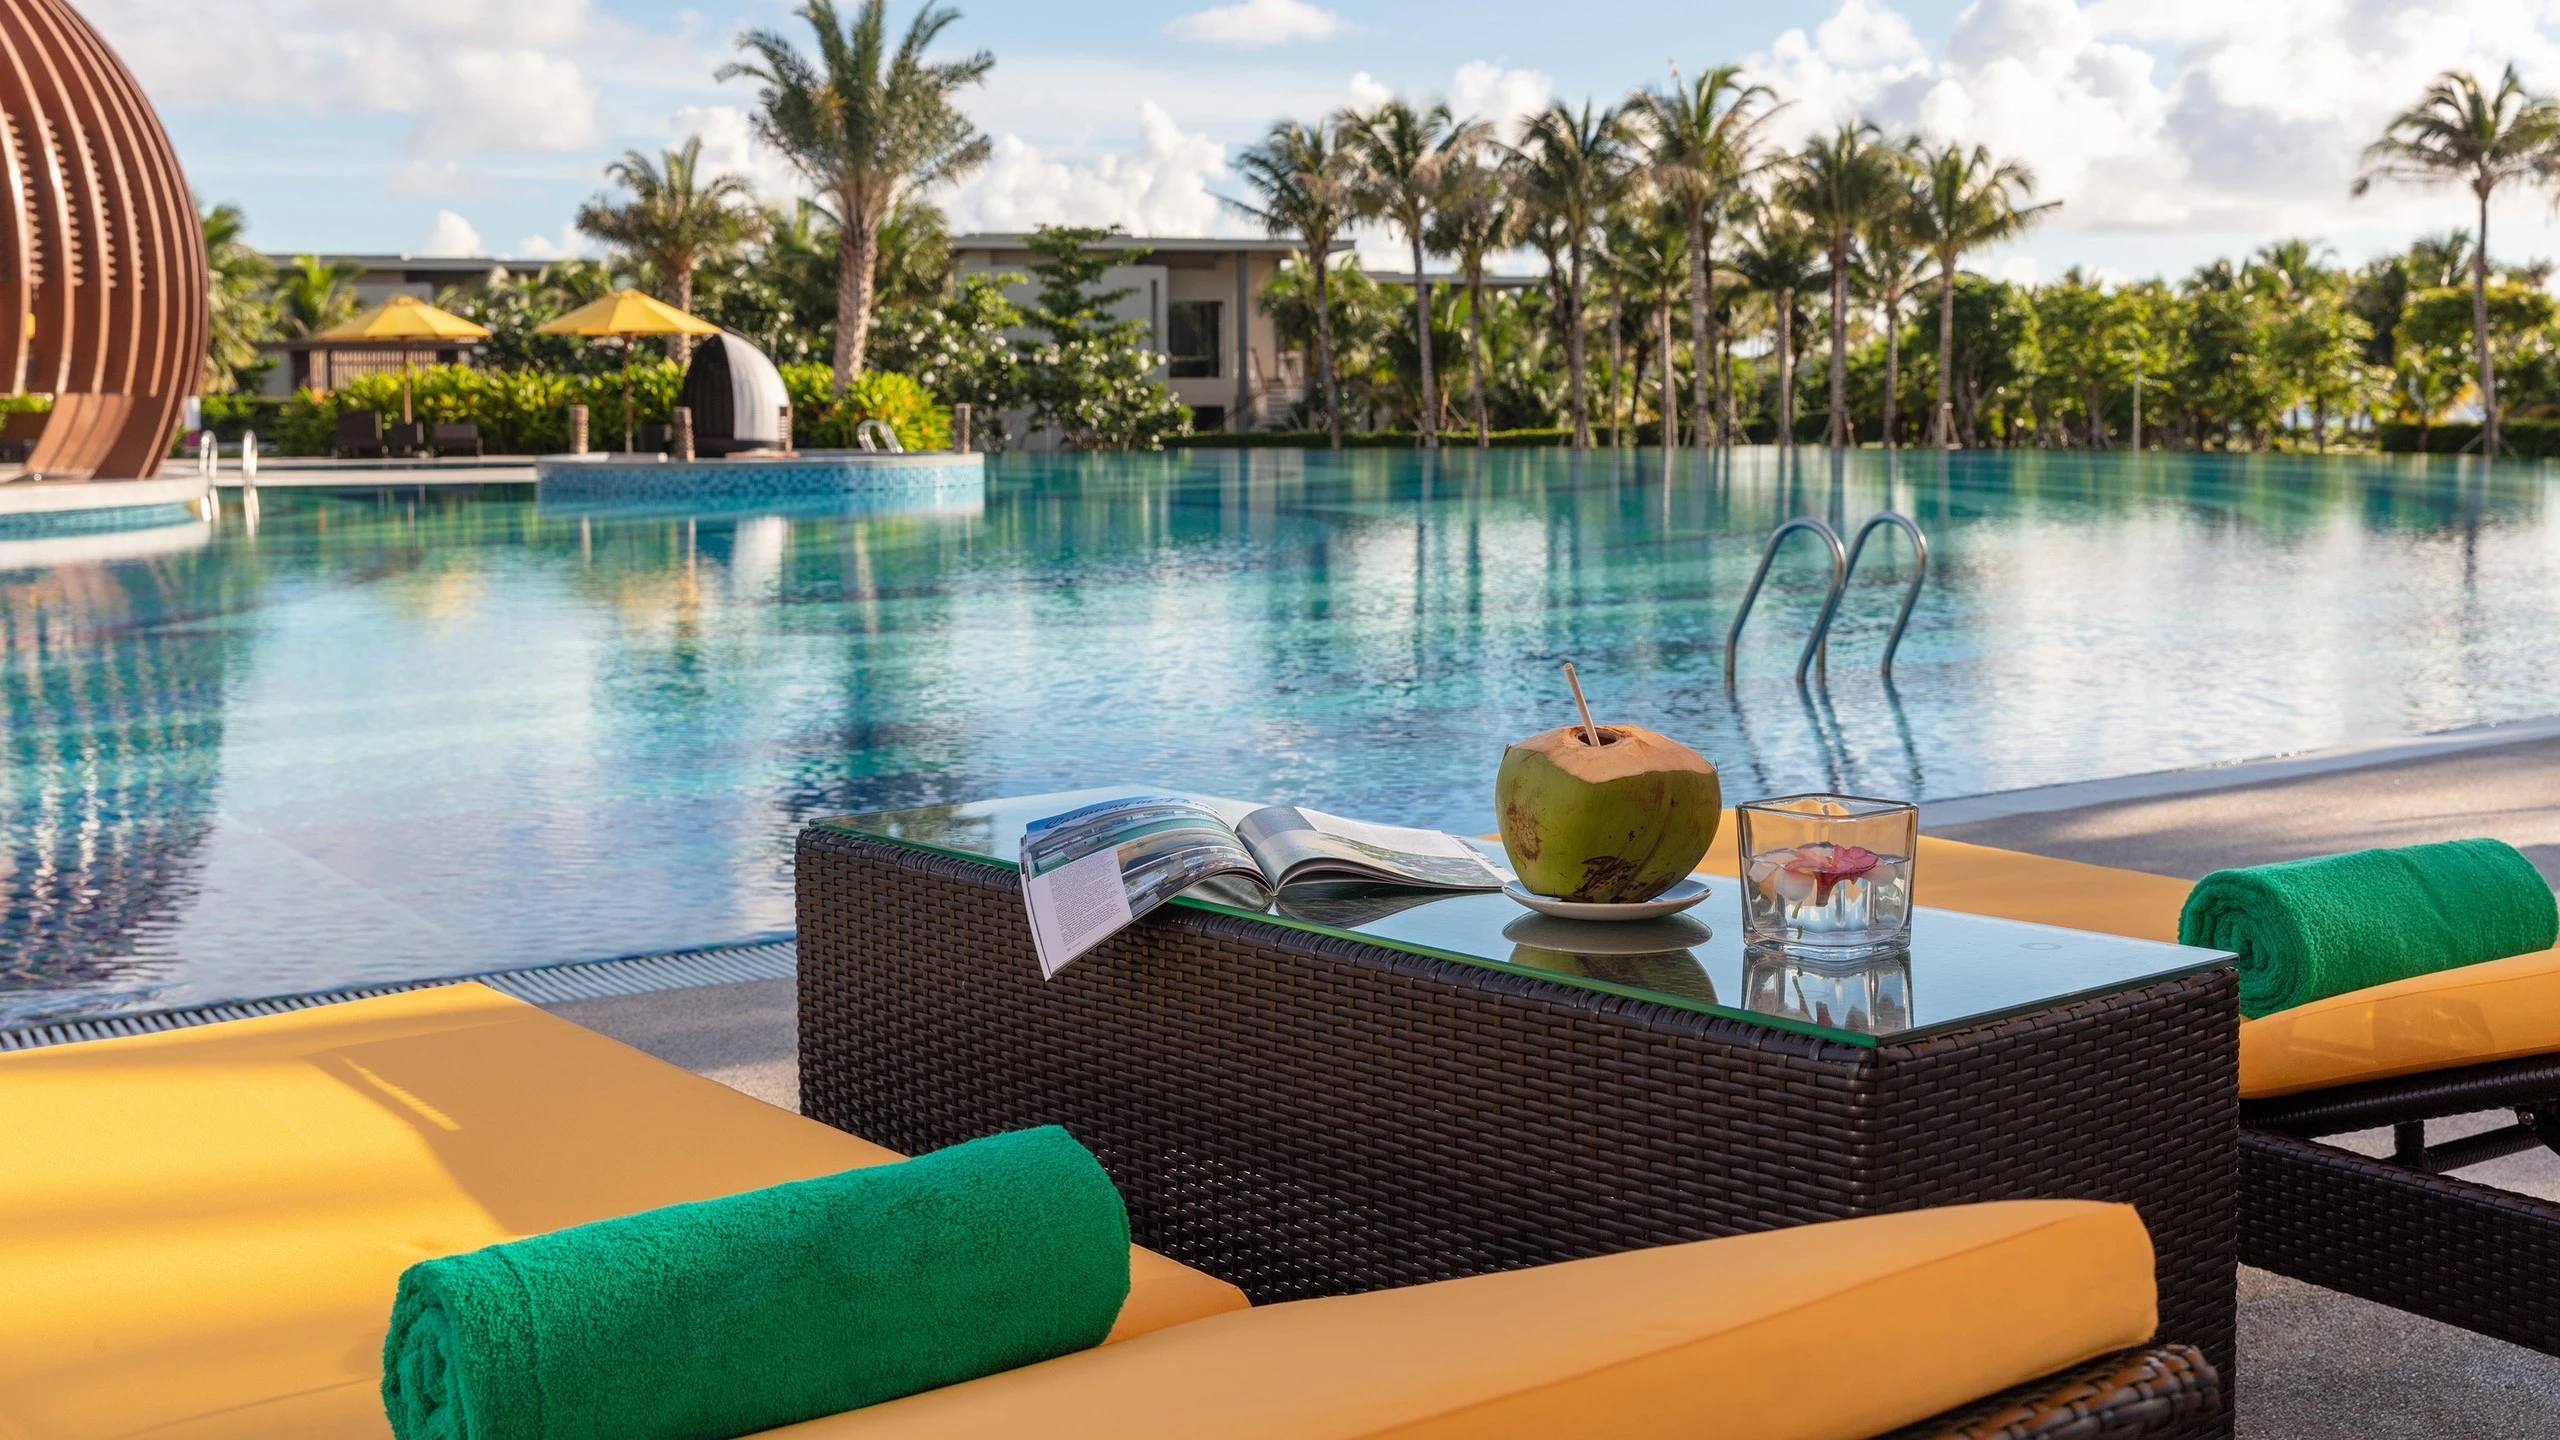 Khu nghỉ dưỡng Pullman Phú Quốc mang đến kỳ nghỉ “xanh” cho du khách